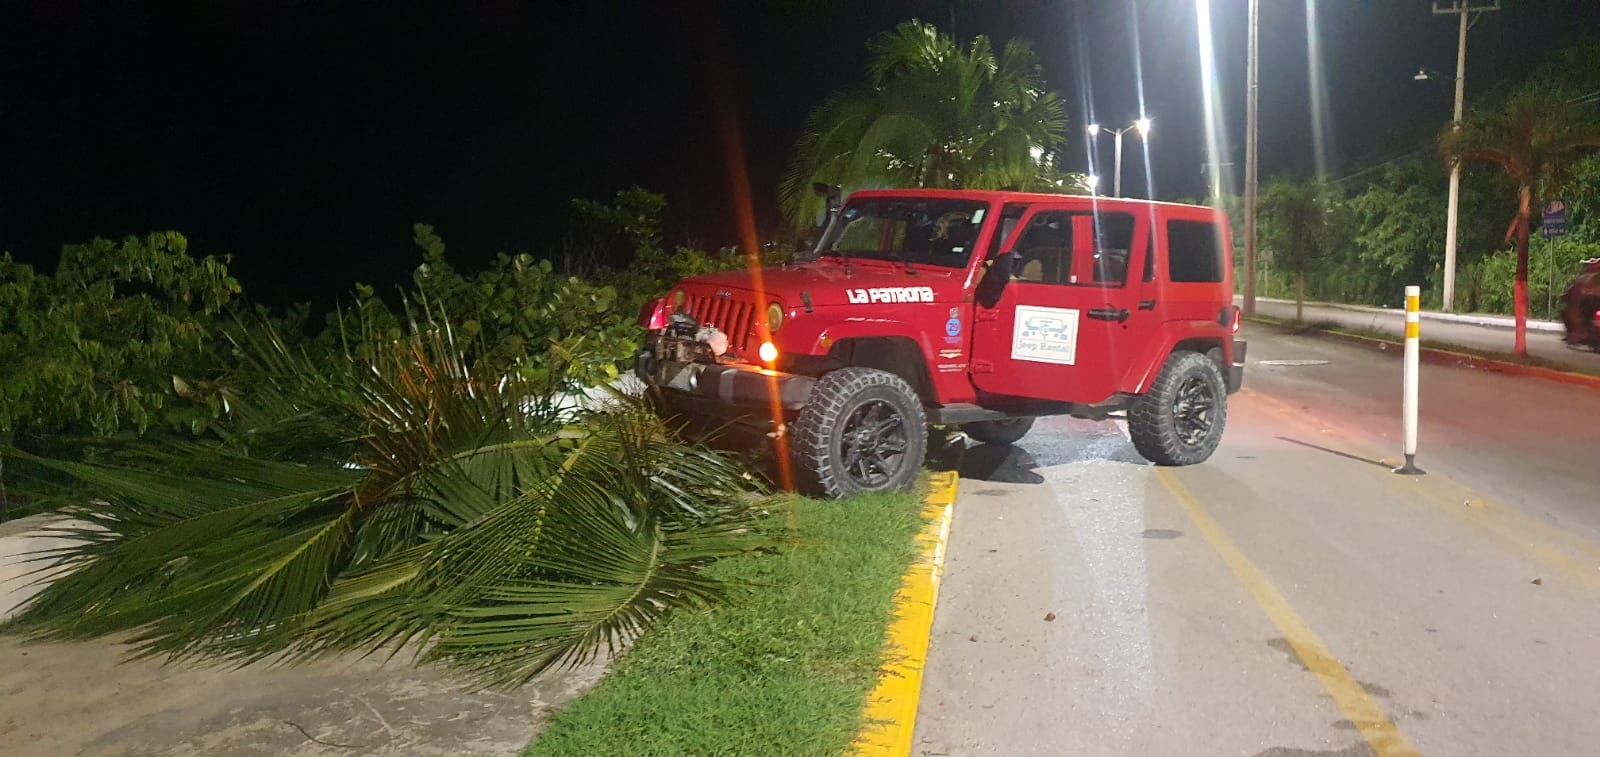 El automóvil en el que viajaban los guatemaltecos en Cozumel, terminó sobre la banqueta